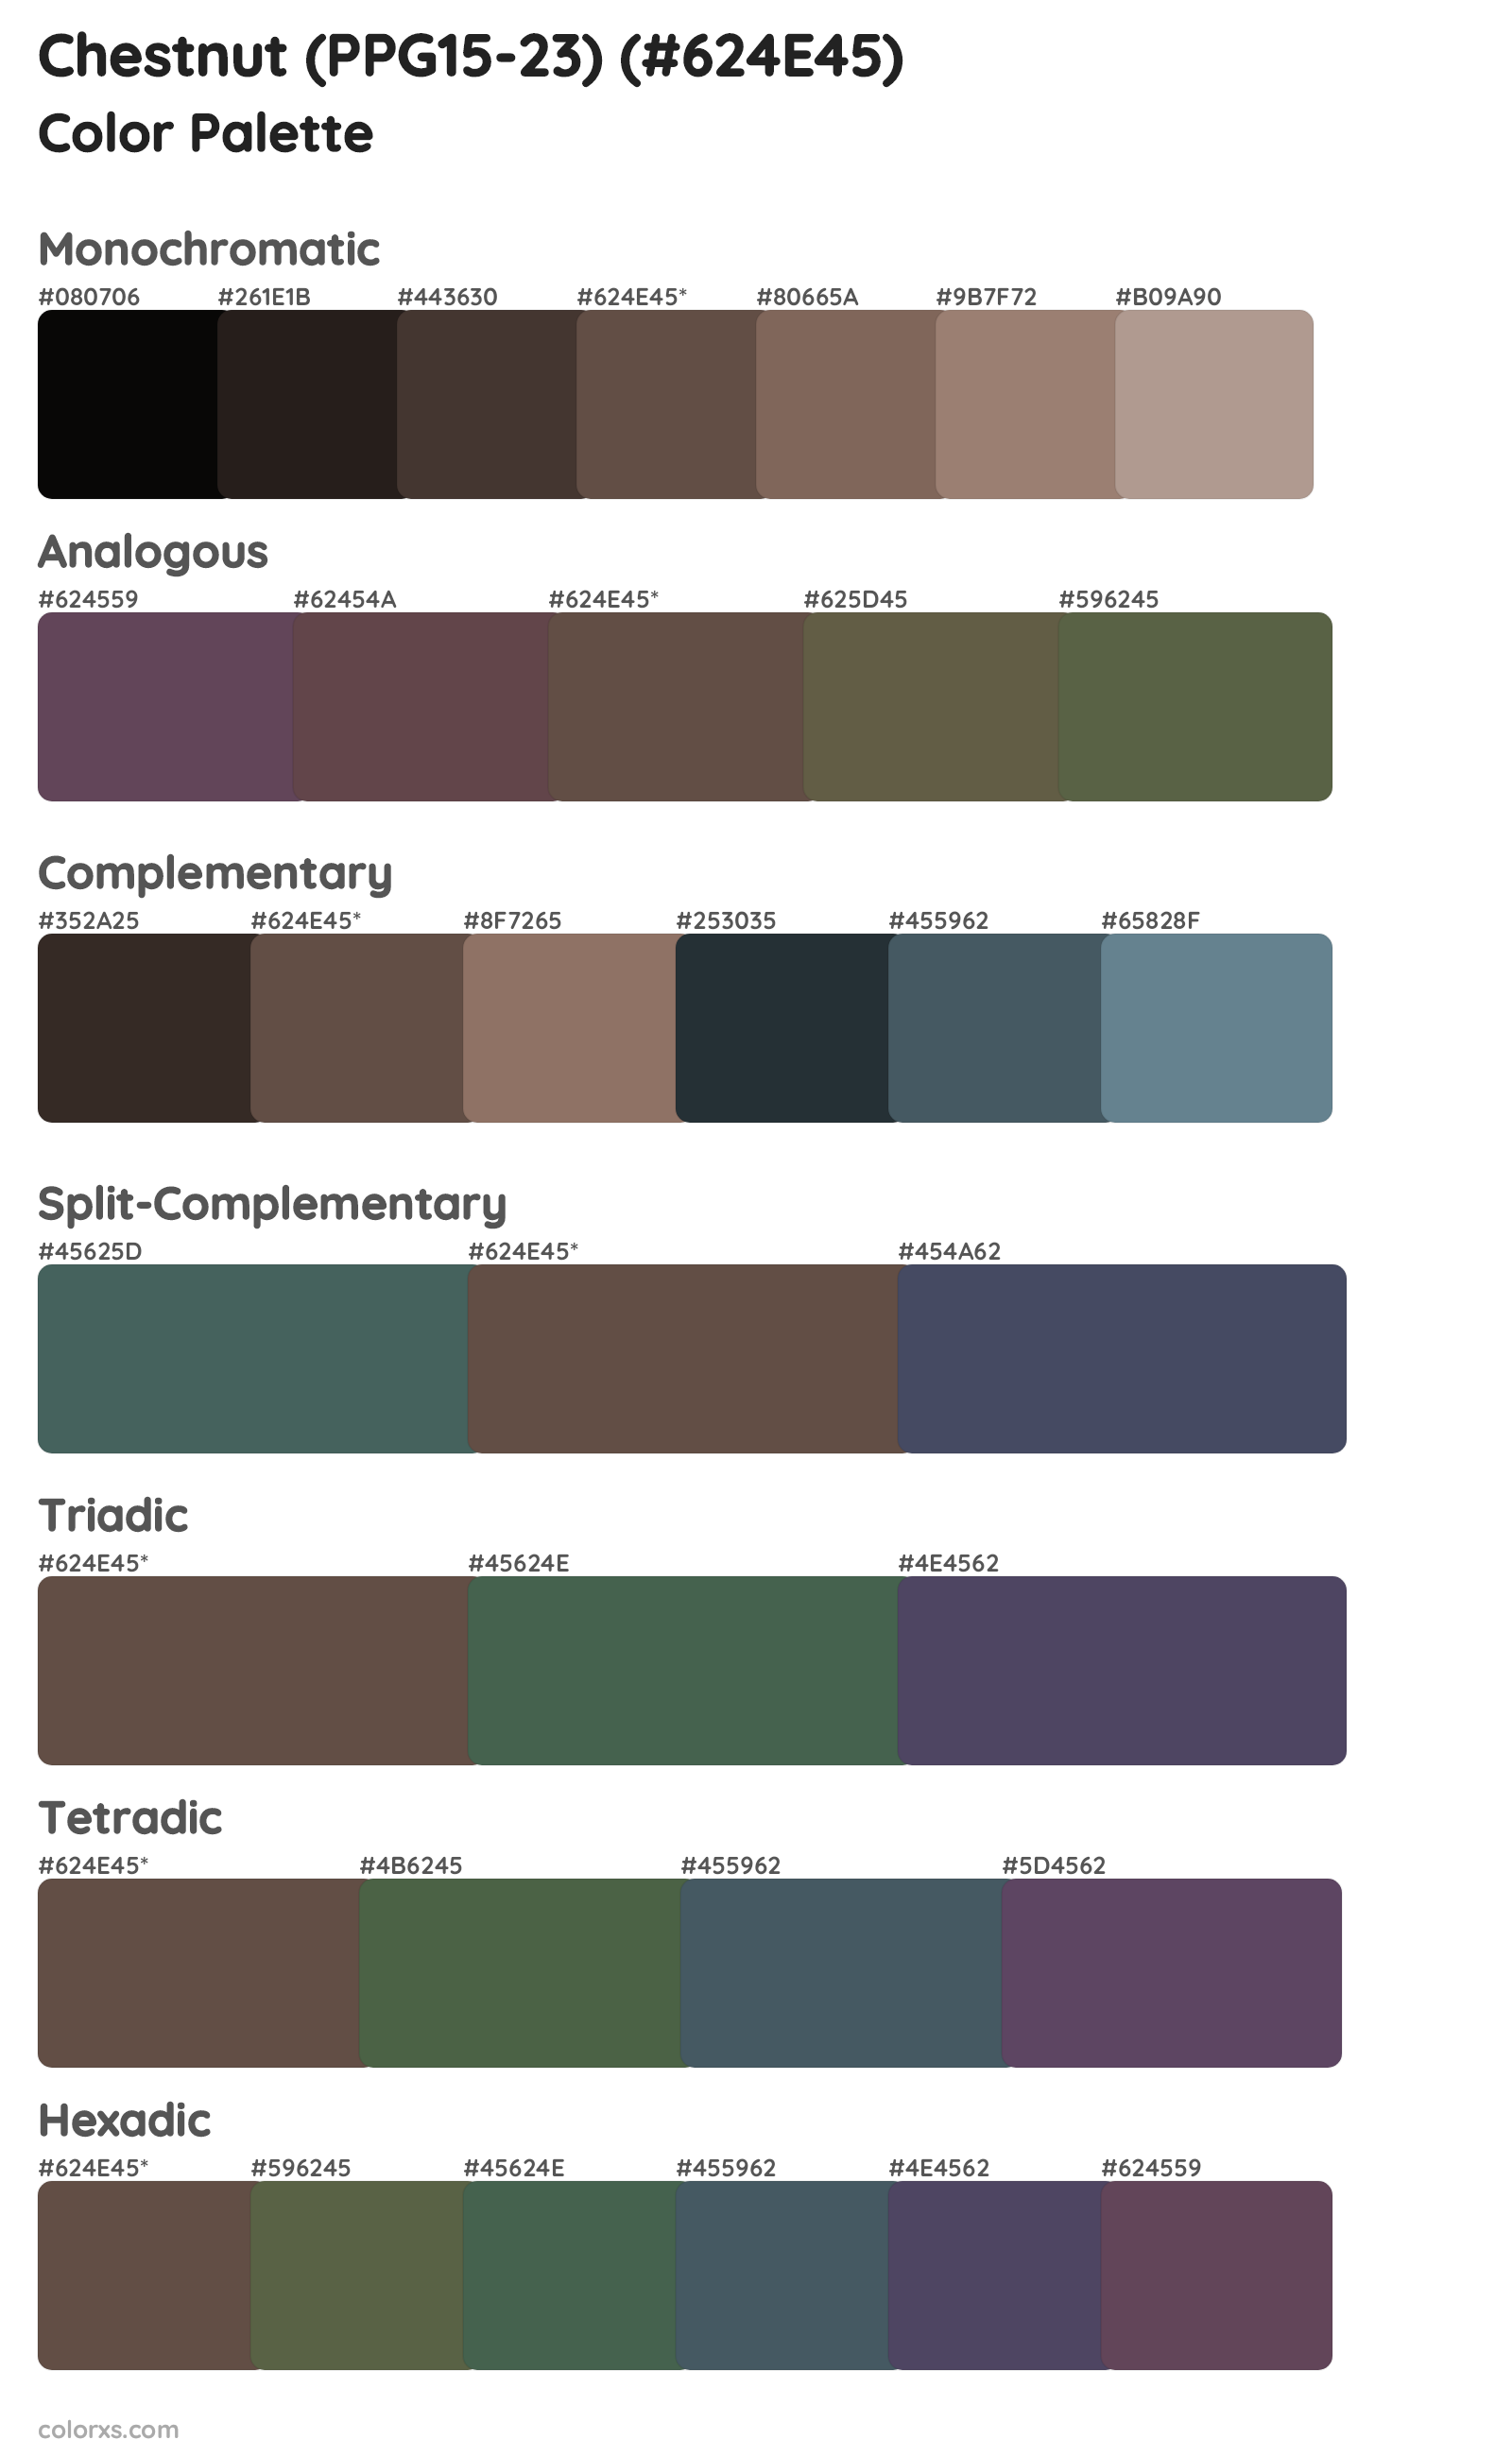 Chestnut (PPG15-23) Color Scheme Palettes